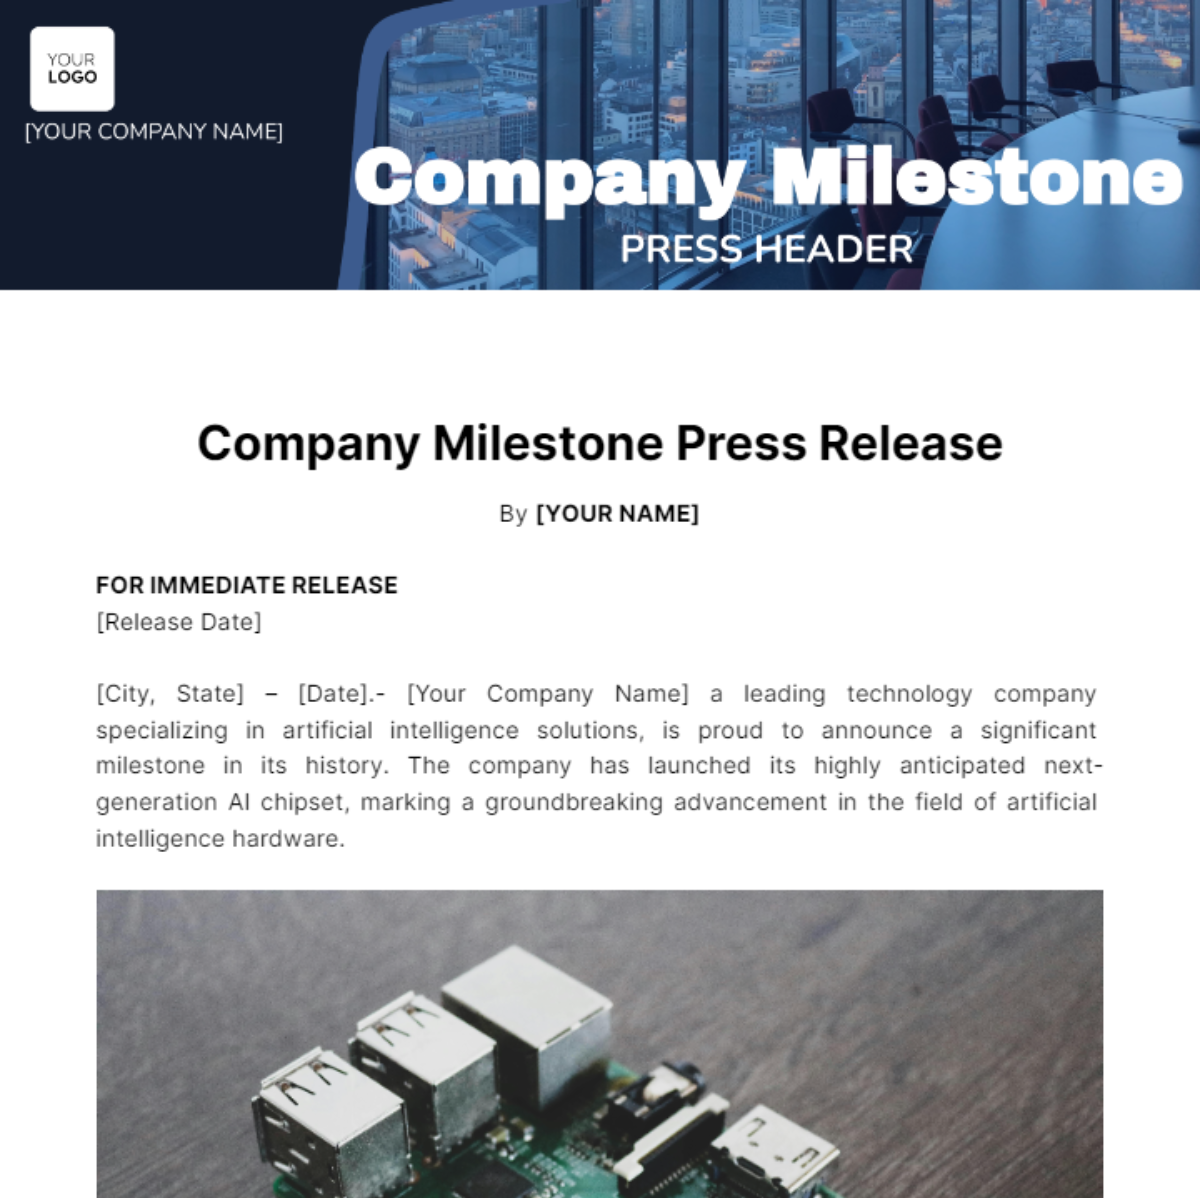 Company Milestone Press Release Template